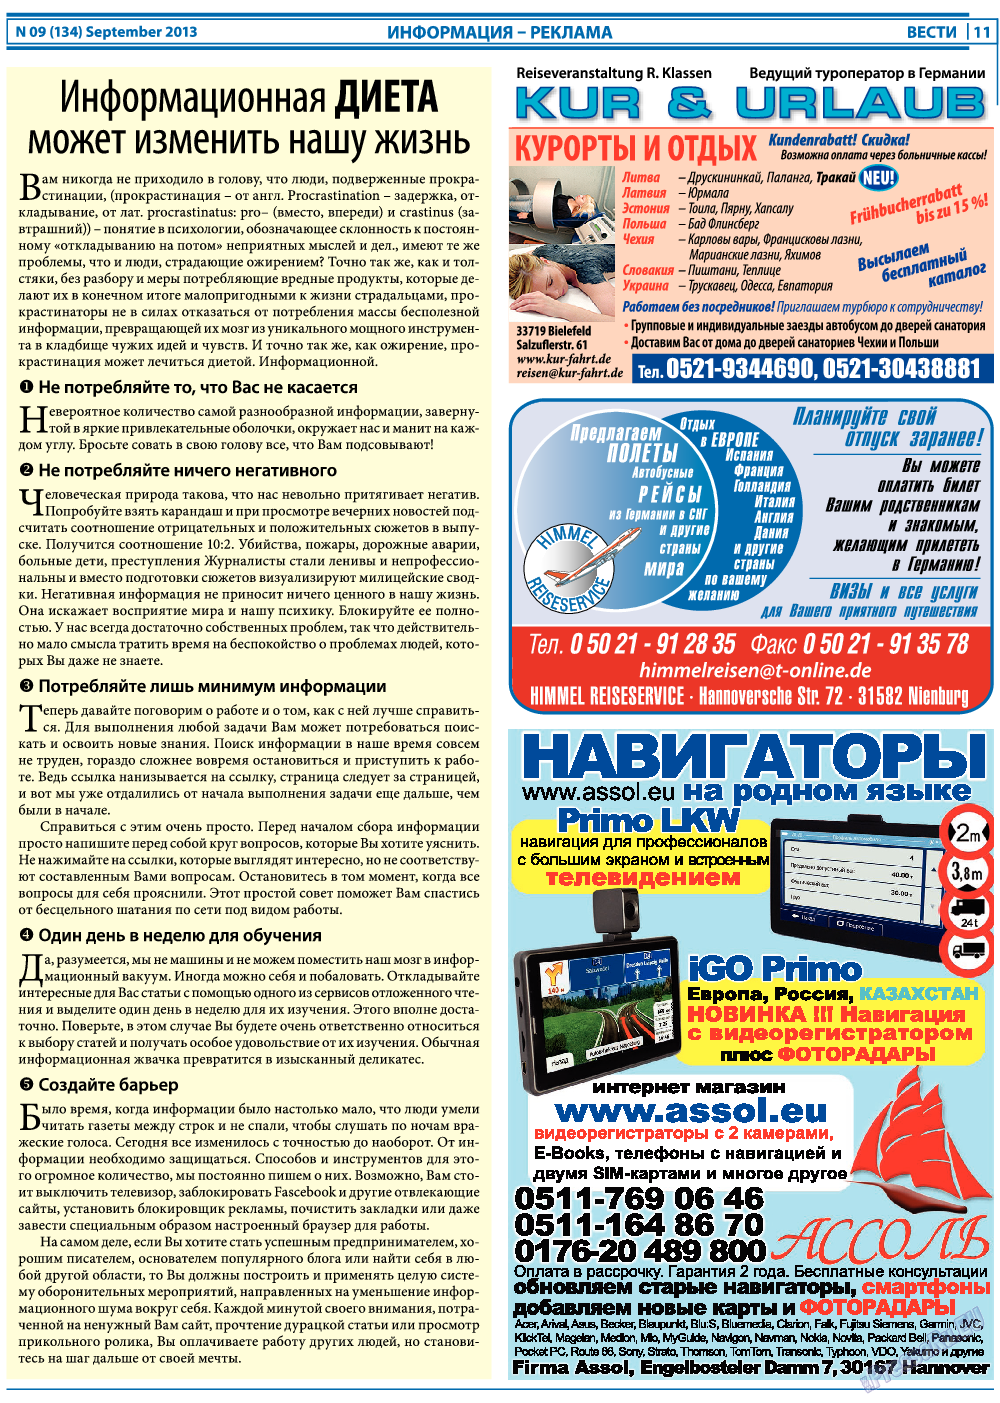 Вести, газета. 2013 №9 стр.11